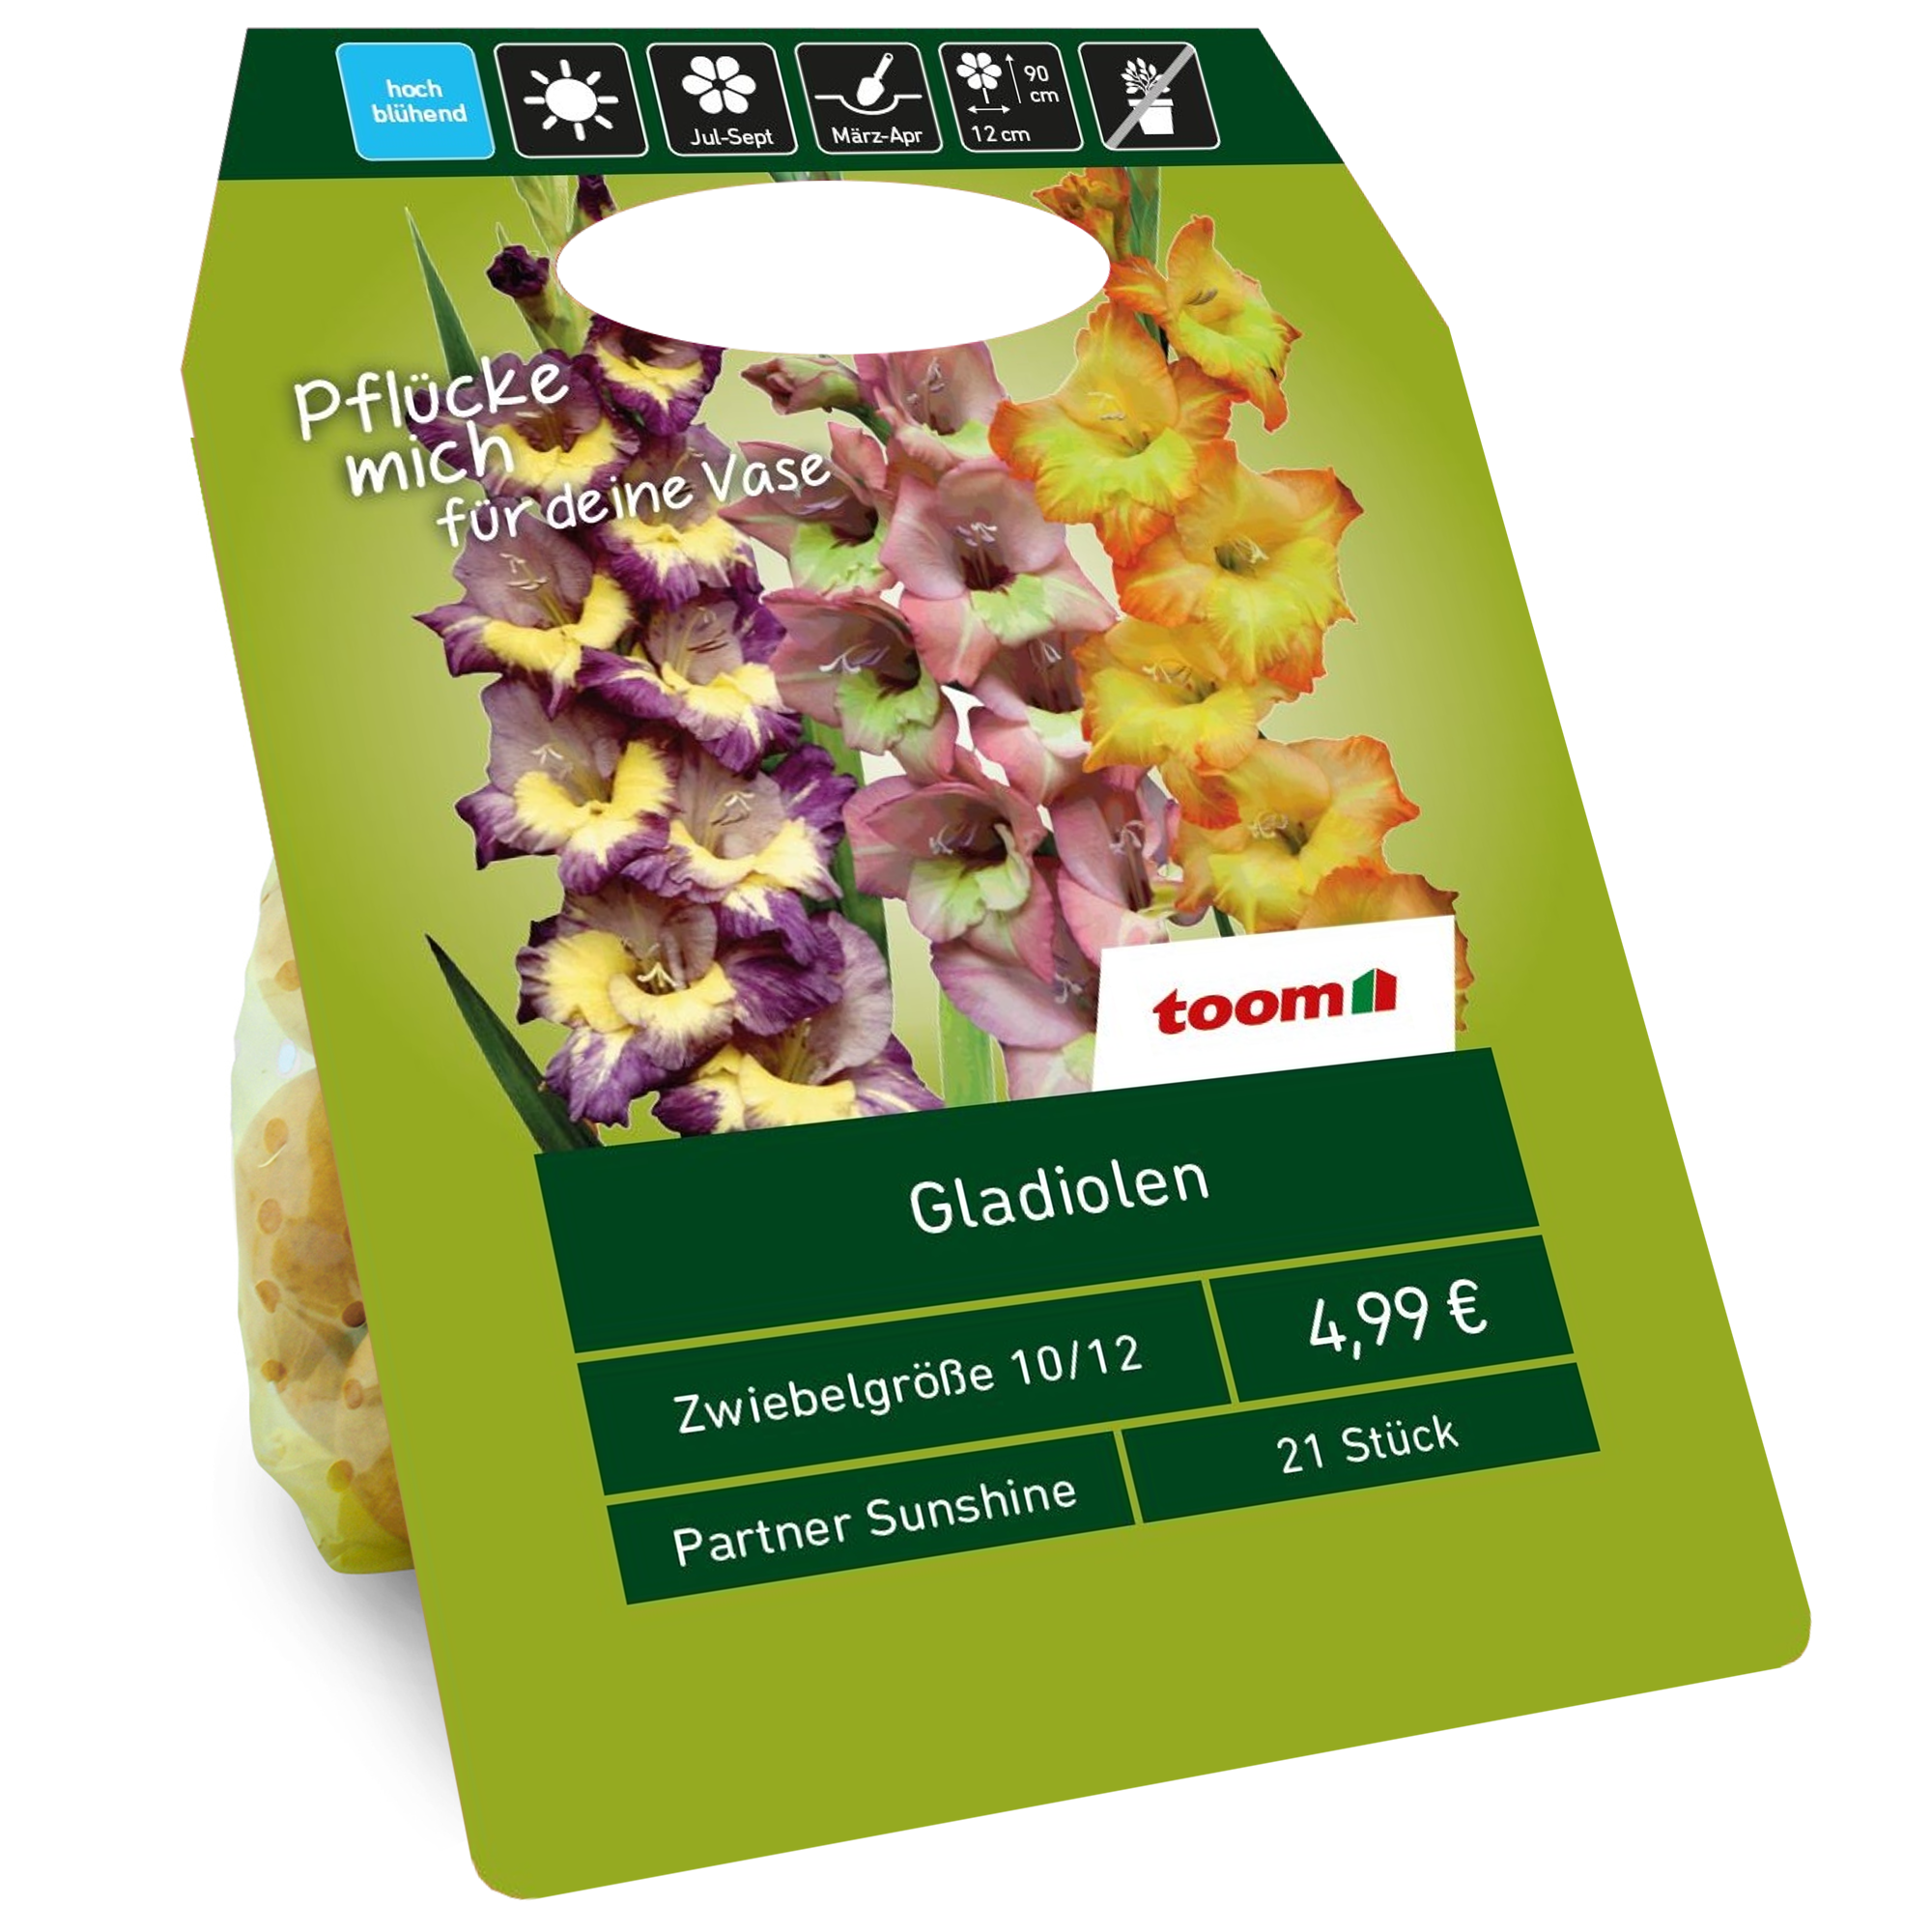 Gladiolen 'Sunshine Partner' Mischung 21 Zwiebeln + product picture